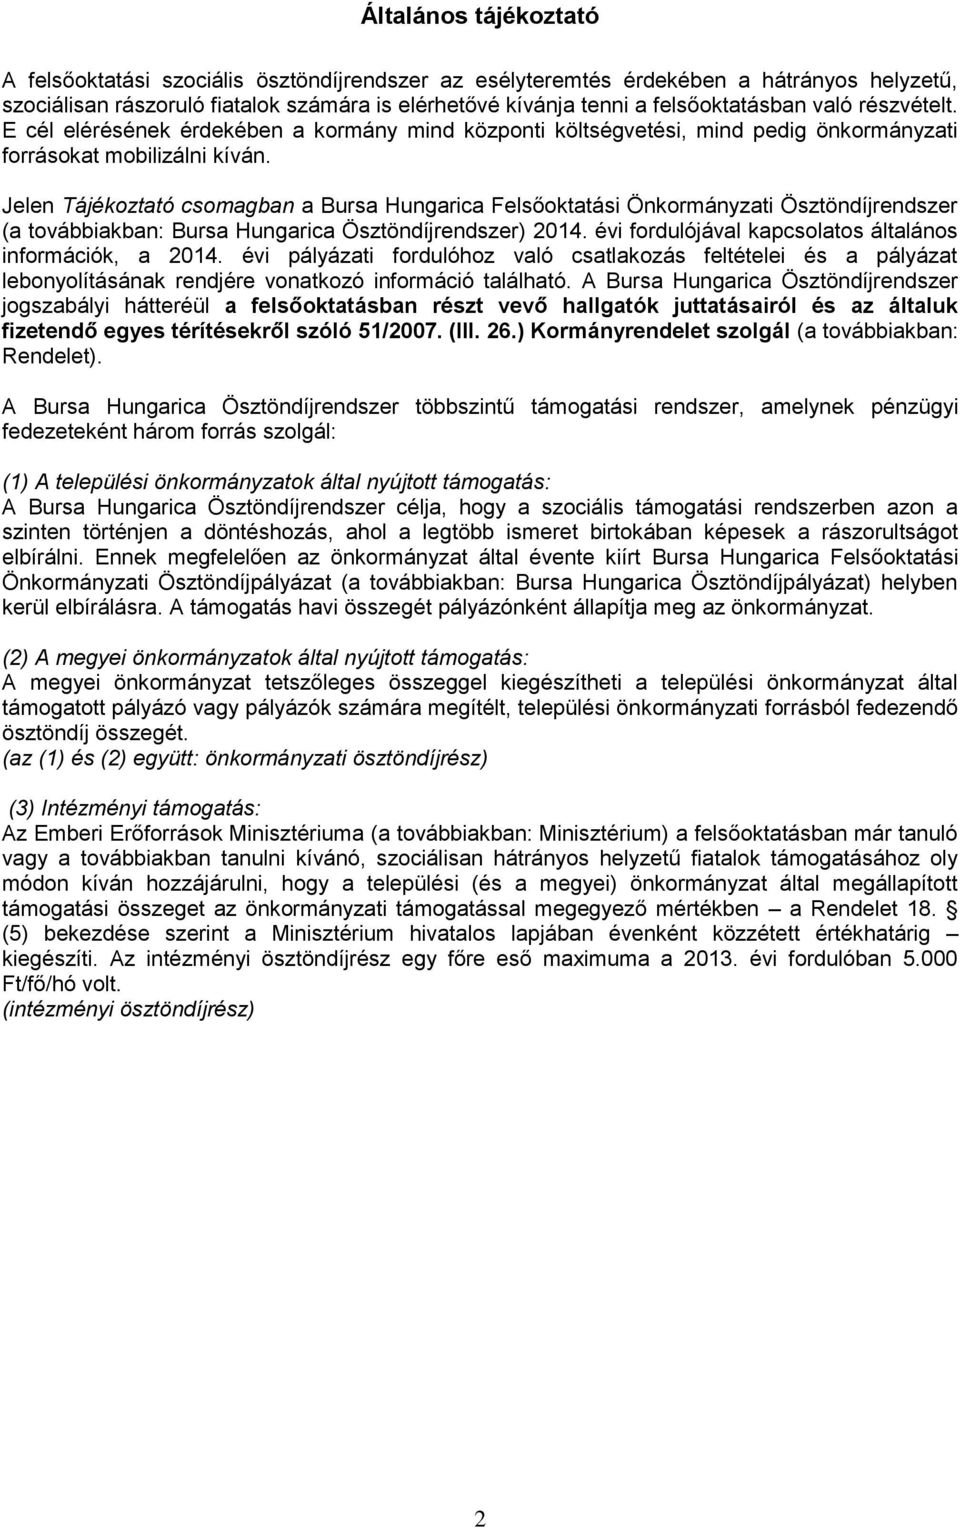 Jelen Tájékoztató csomagban a Bursa Hungarica Felsőoktatási Önkormányzati Ösztöndíjrendszer (a továbbiakban: Bursa Hungarica Ösztöndíjrendszer) 2014.